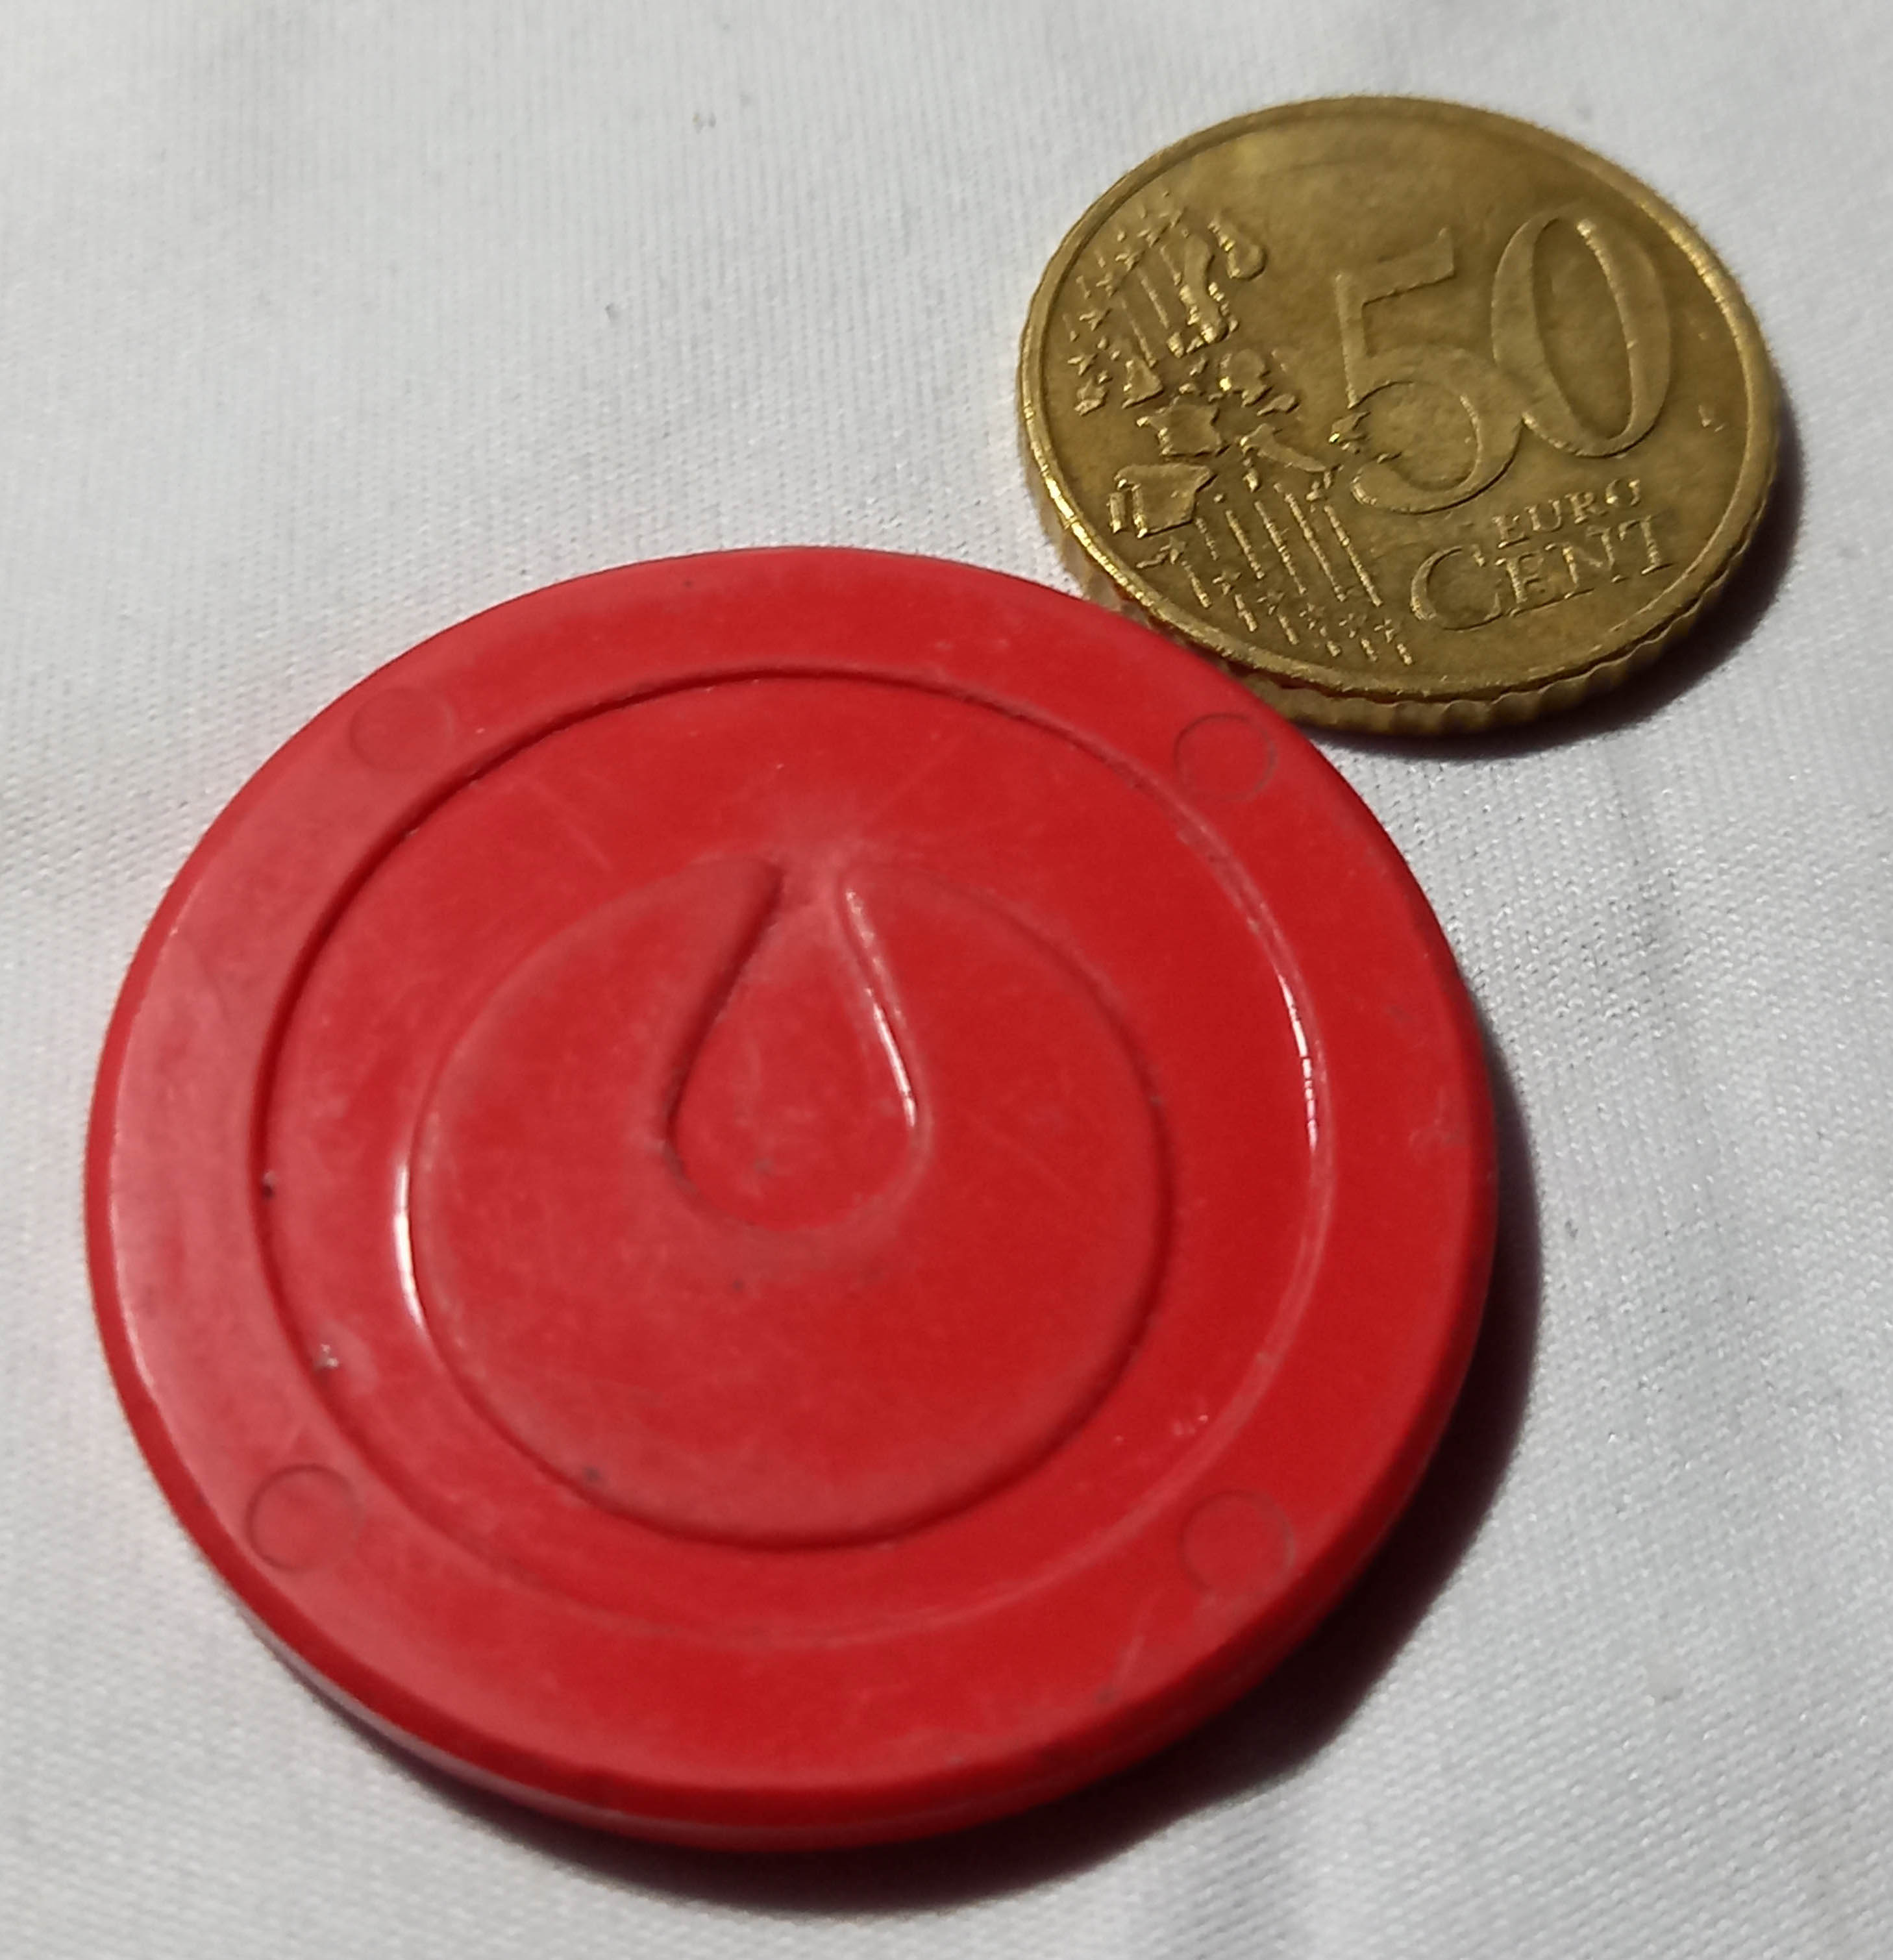 Zu sehen ist eine Biokunststoffplakette, die neben einer 50 Cent-Münze liegt und etwa doppelt so groß ist wie diese.